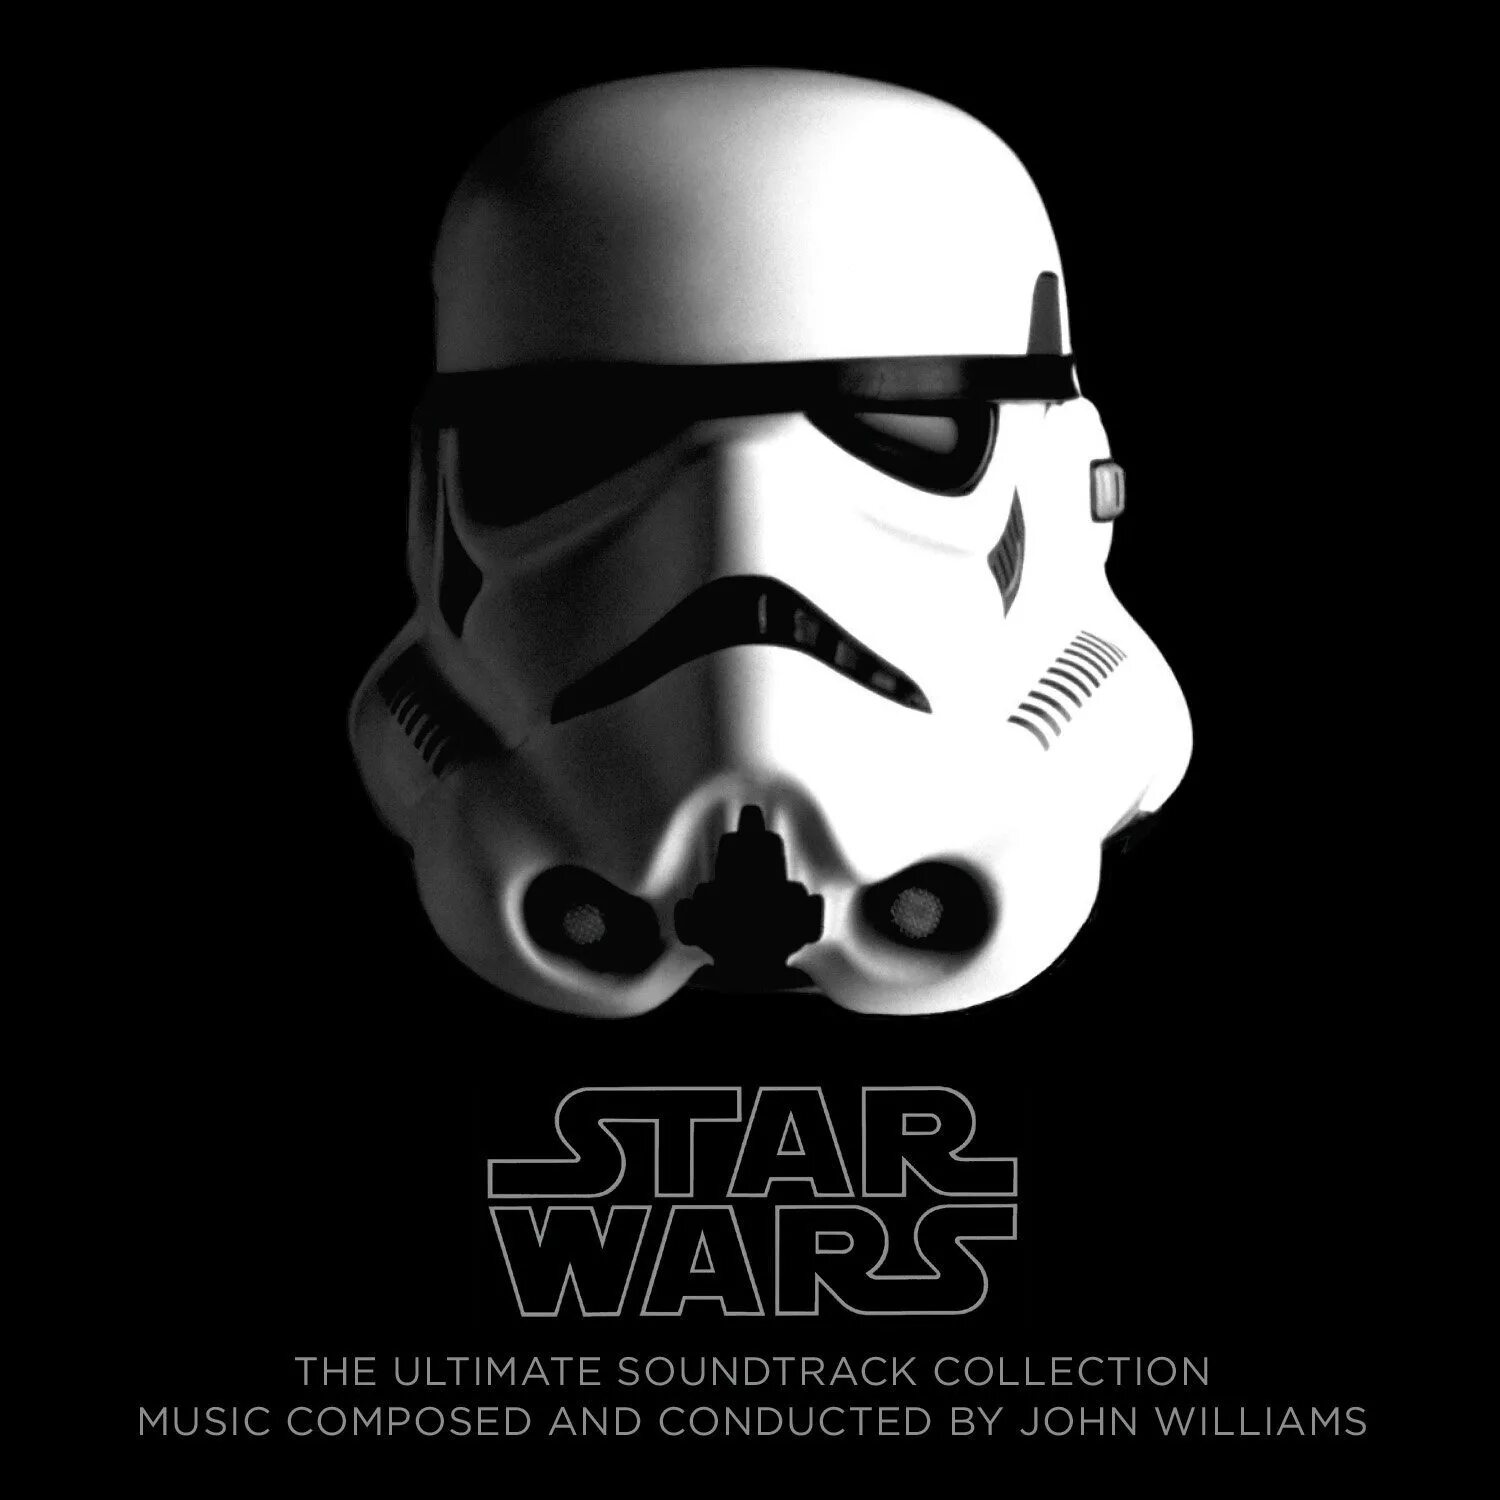 Альбом Звездные войны. Джон Уильямс Звездные войны. Star Wars Soundtrack. Звездные войны cd10. Купить star wars collection